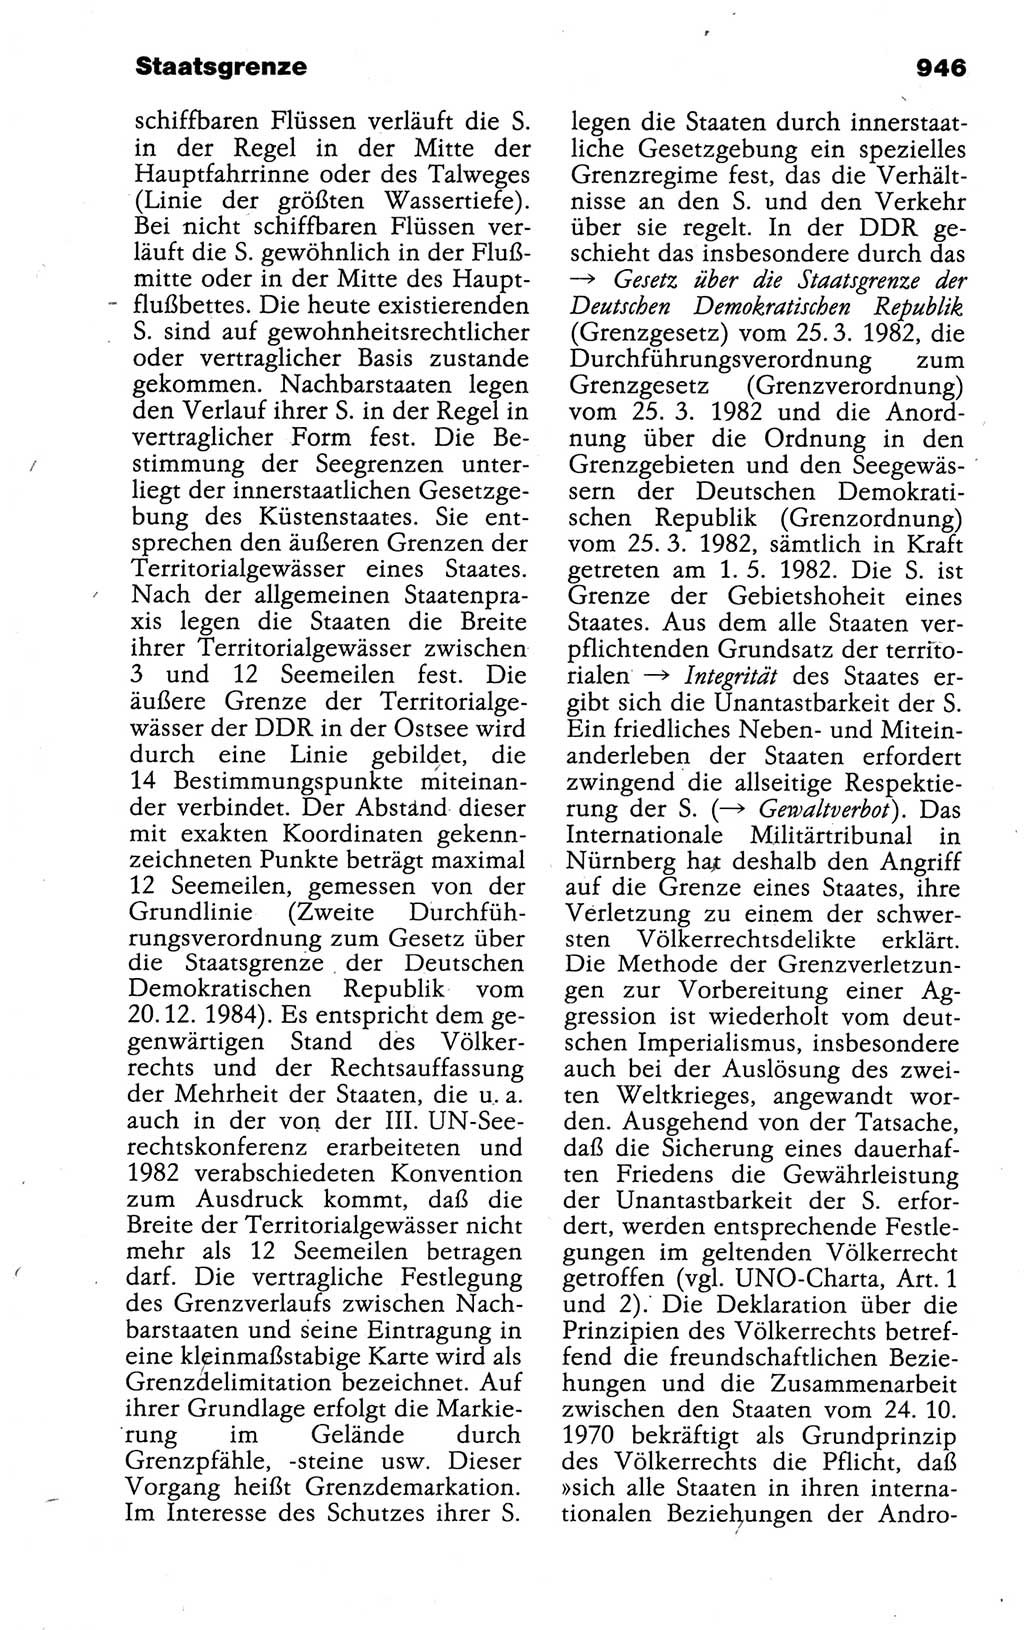 Kleines politisches Wörterbuch [Deutsche Demokratische Republik (DDR)] 1988, Seite 946 (Kl. pol. Wb. DDR 1988, S. 946)